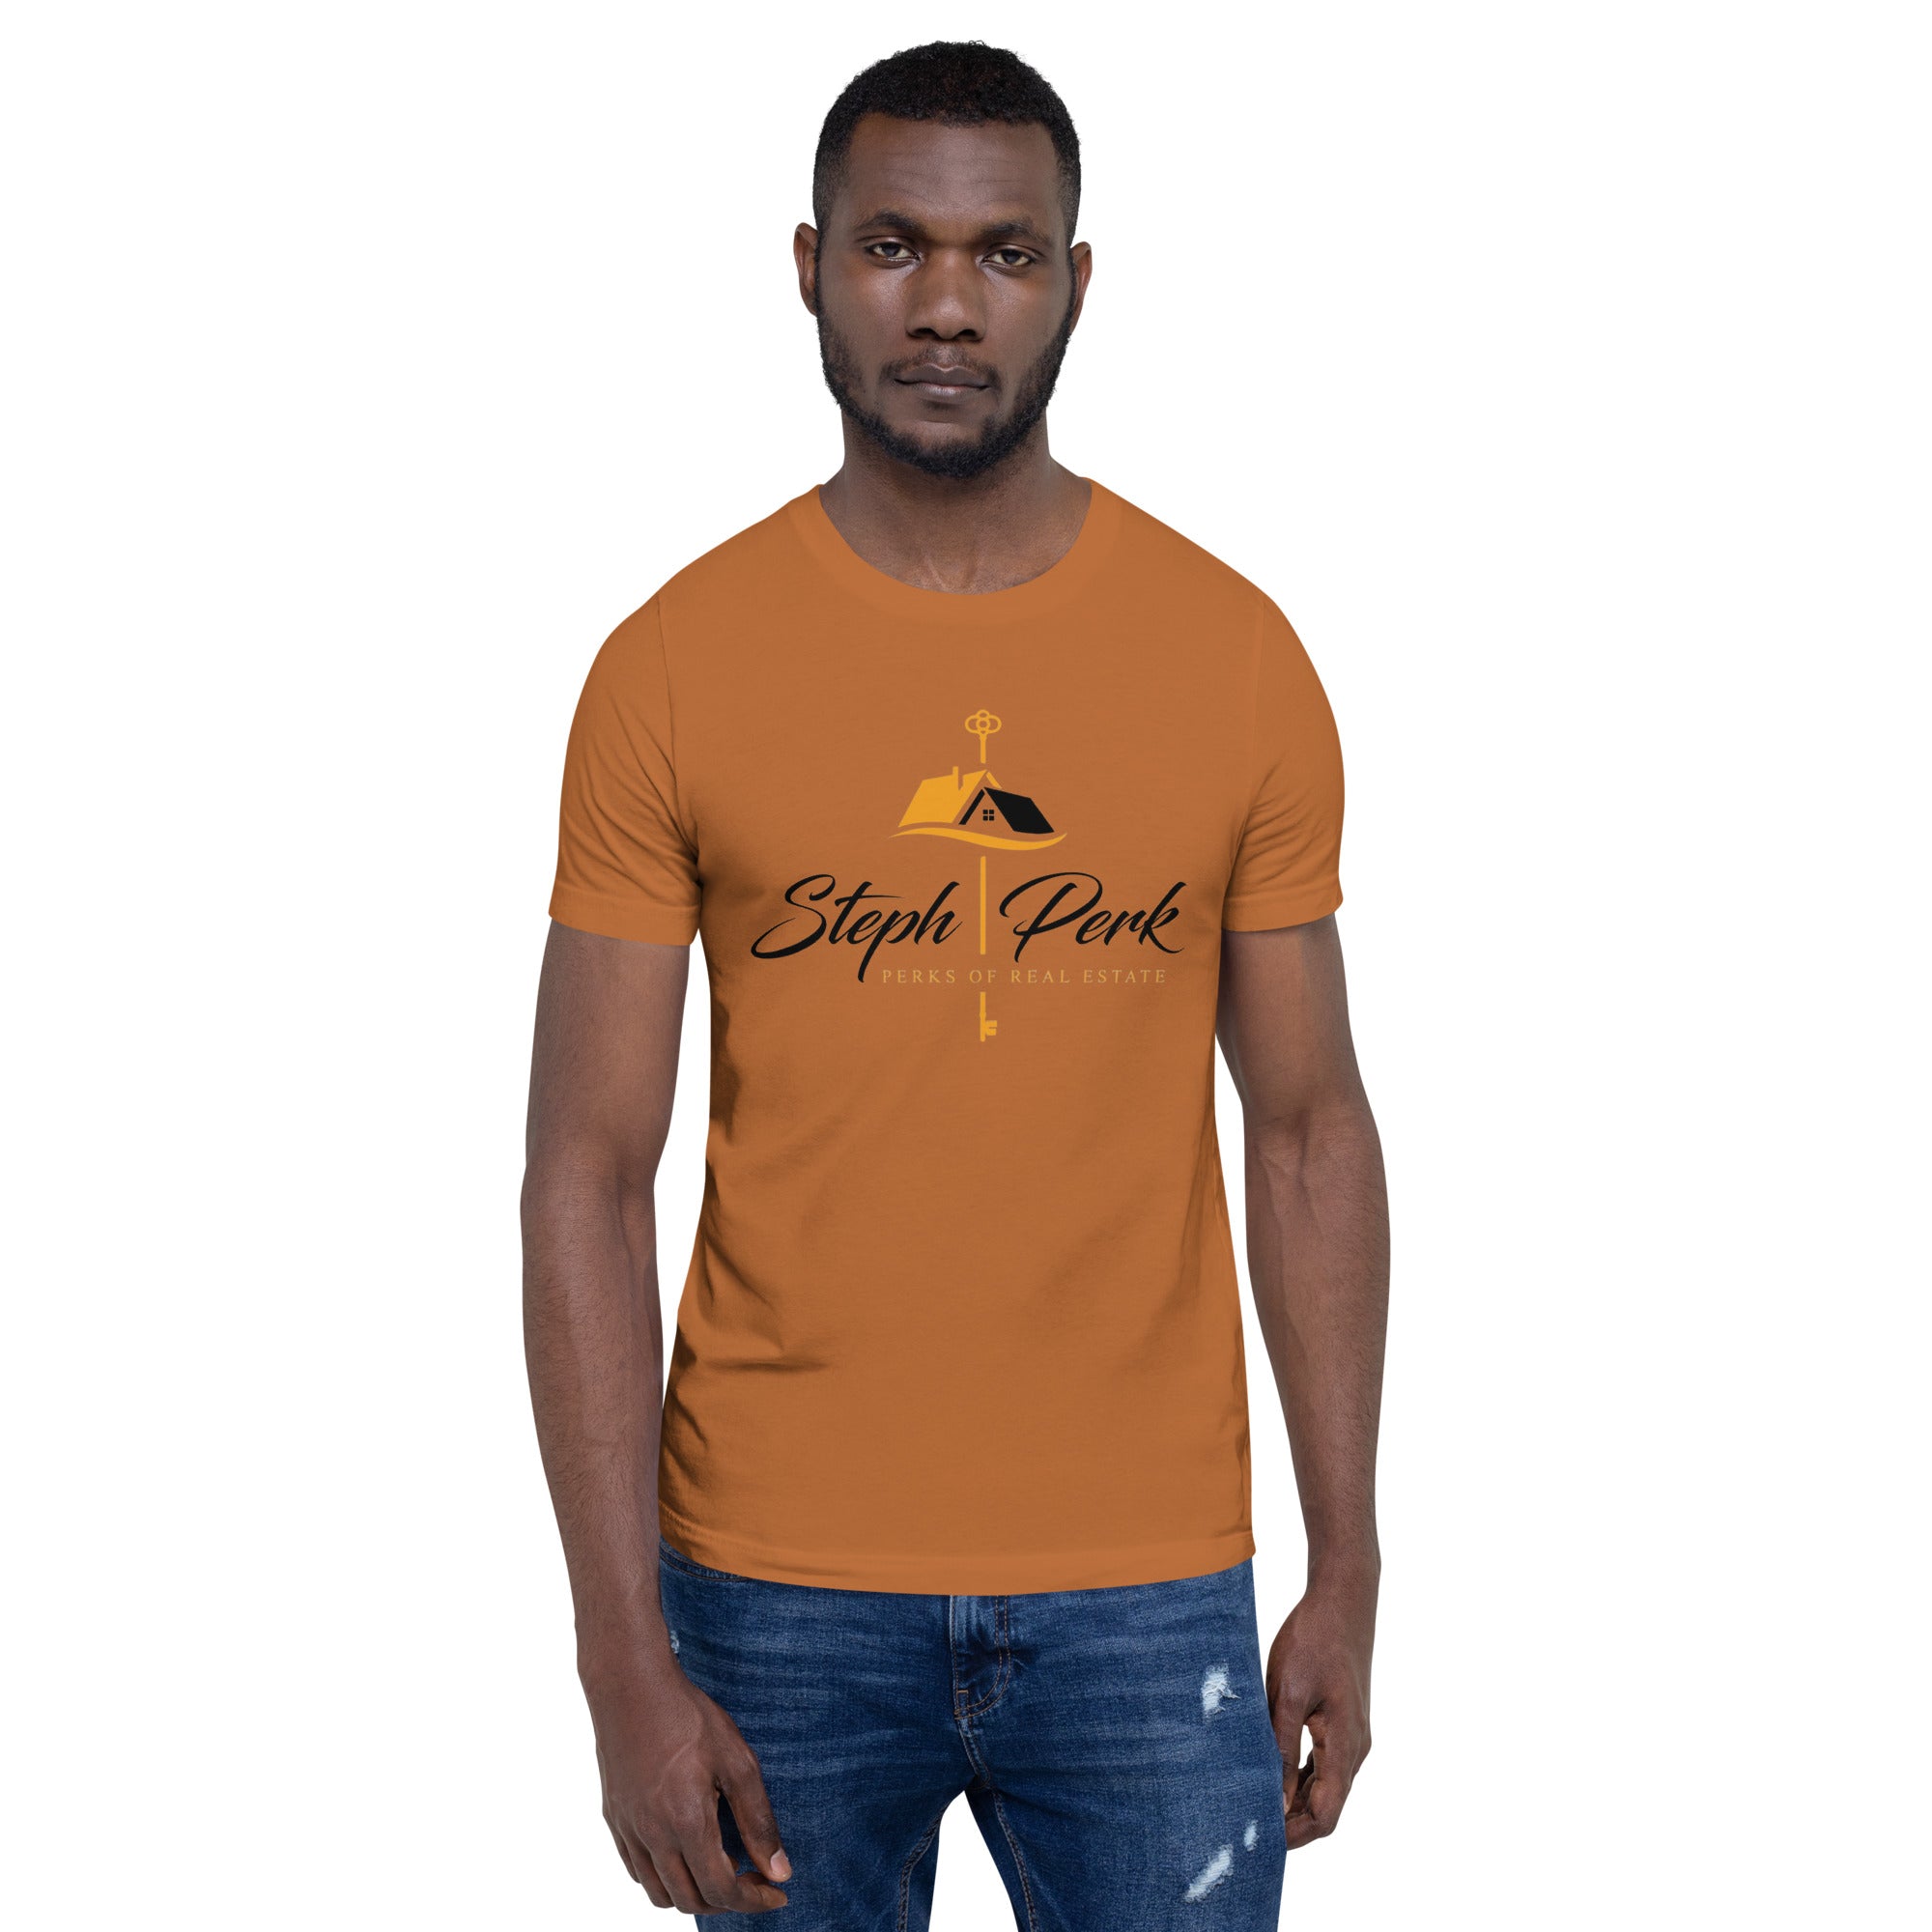 Steph Perk Real Estate Unisex t-shirt